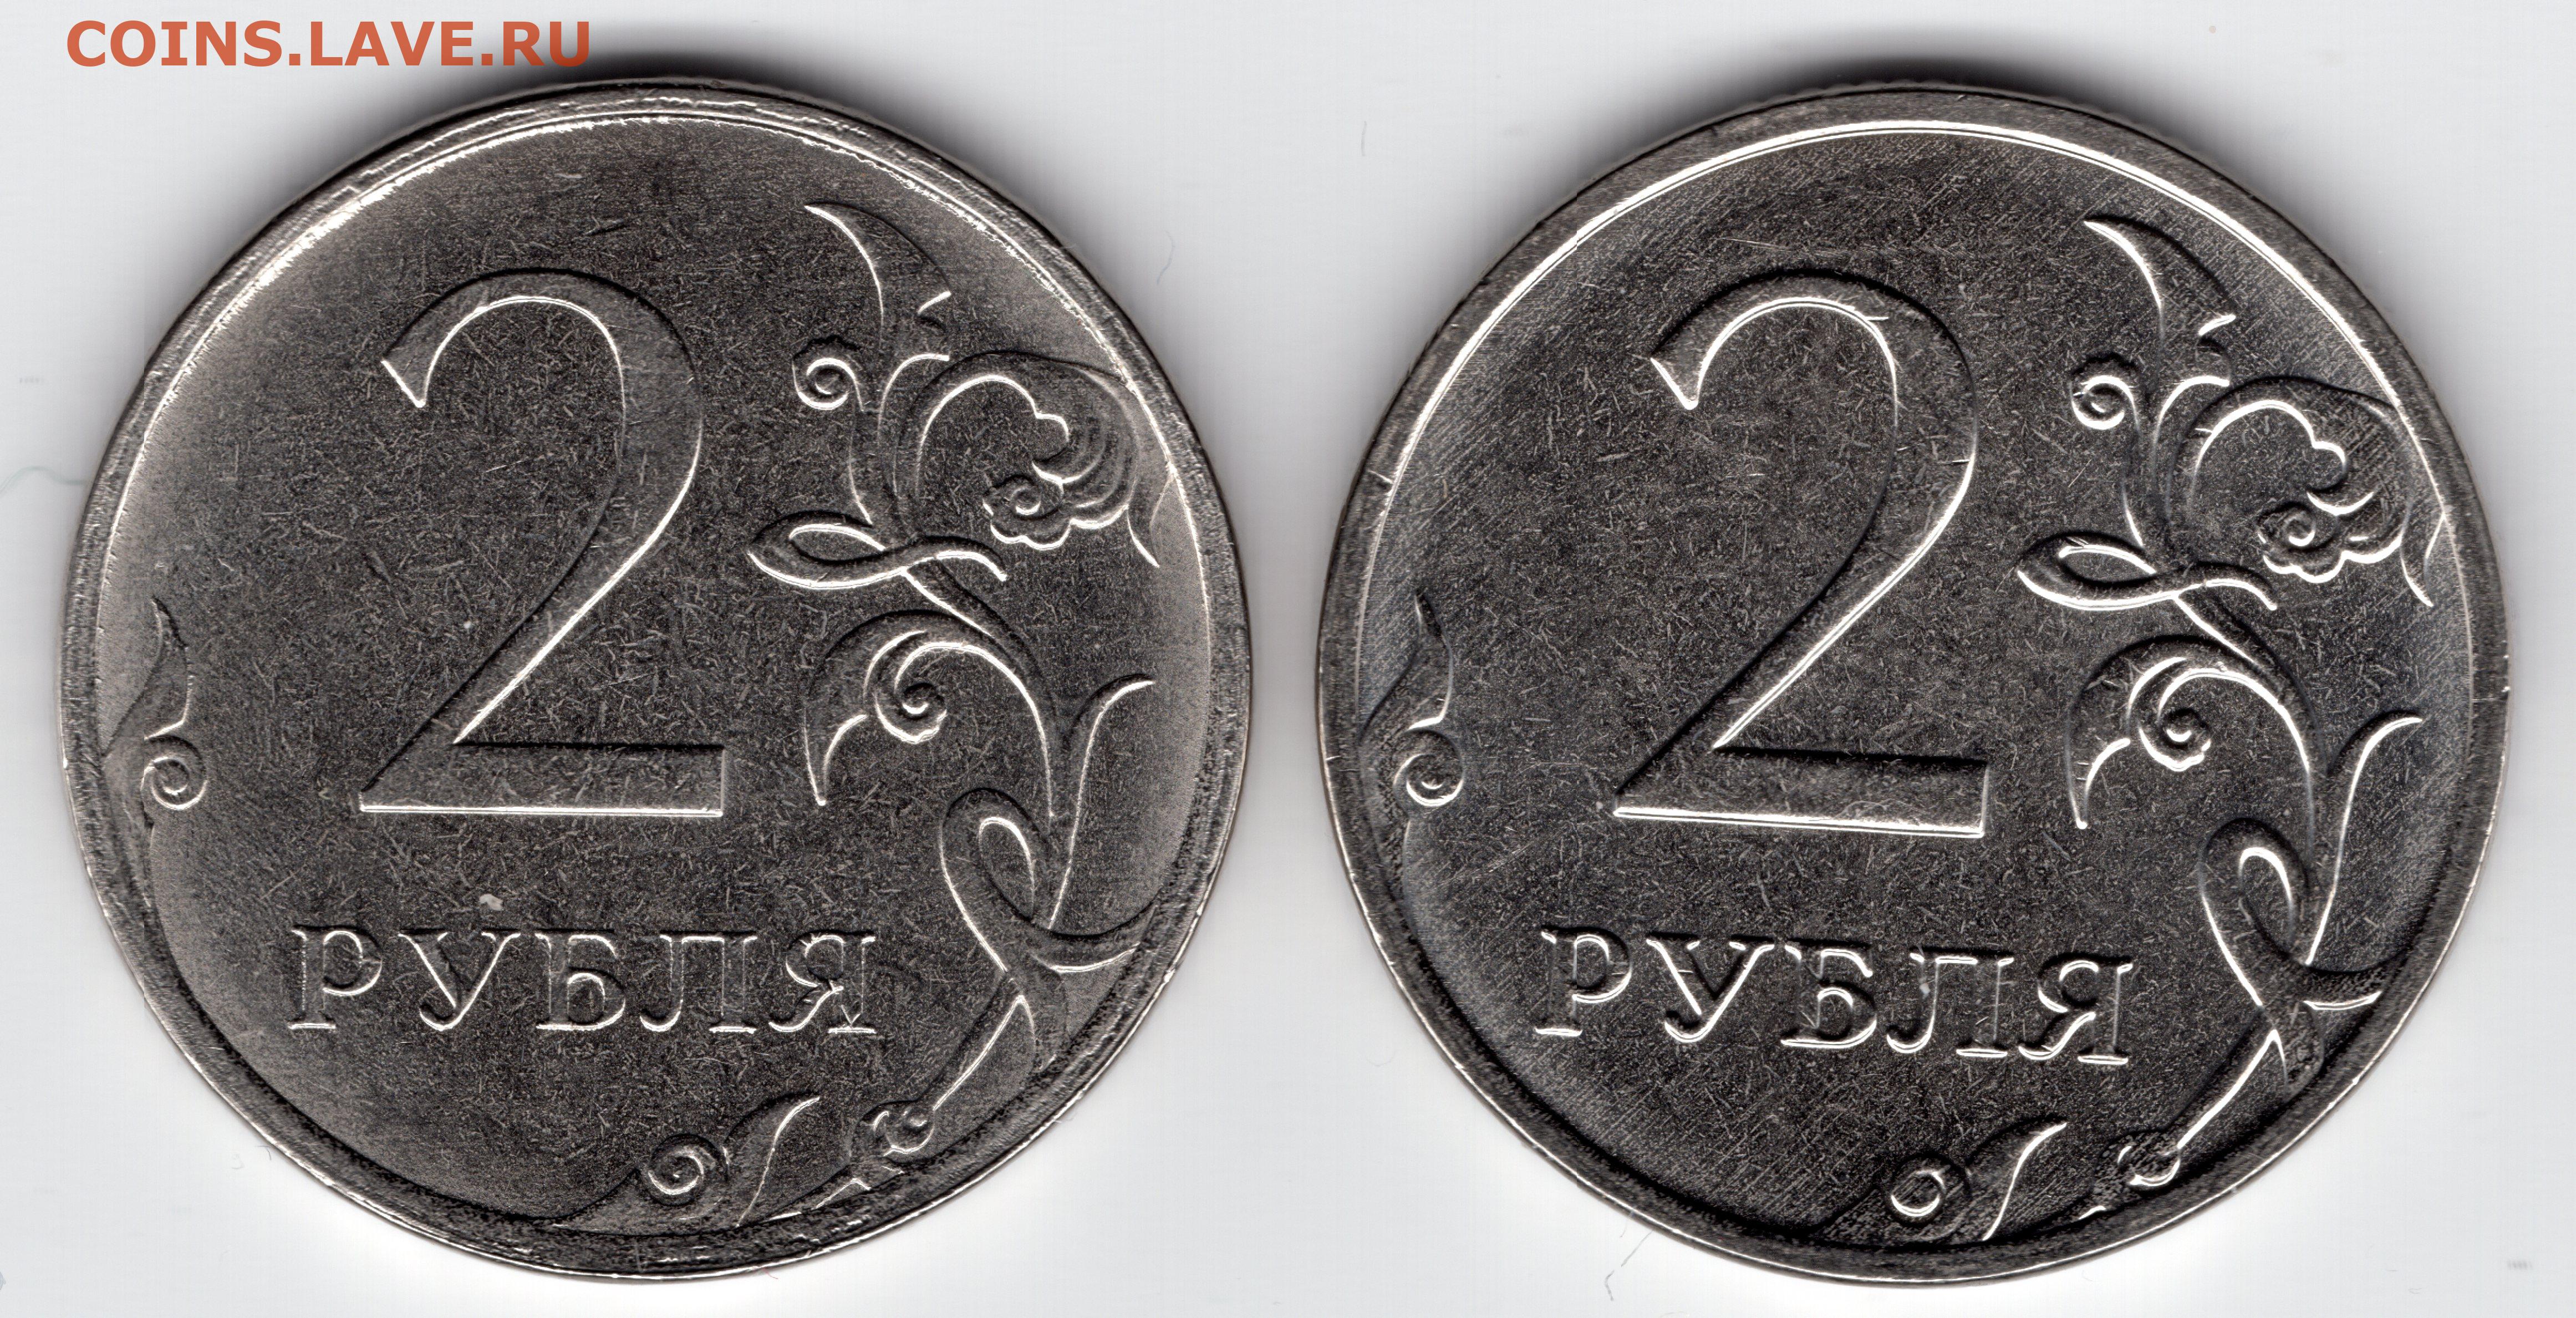 75 рублей 80. Монета два рубля. Брак монеты 5 рублей 2009г. 1 Рубль шт а шт б. 2 Рубля 2012 с браком.